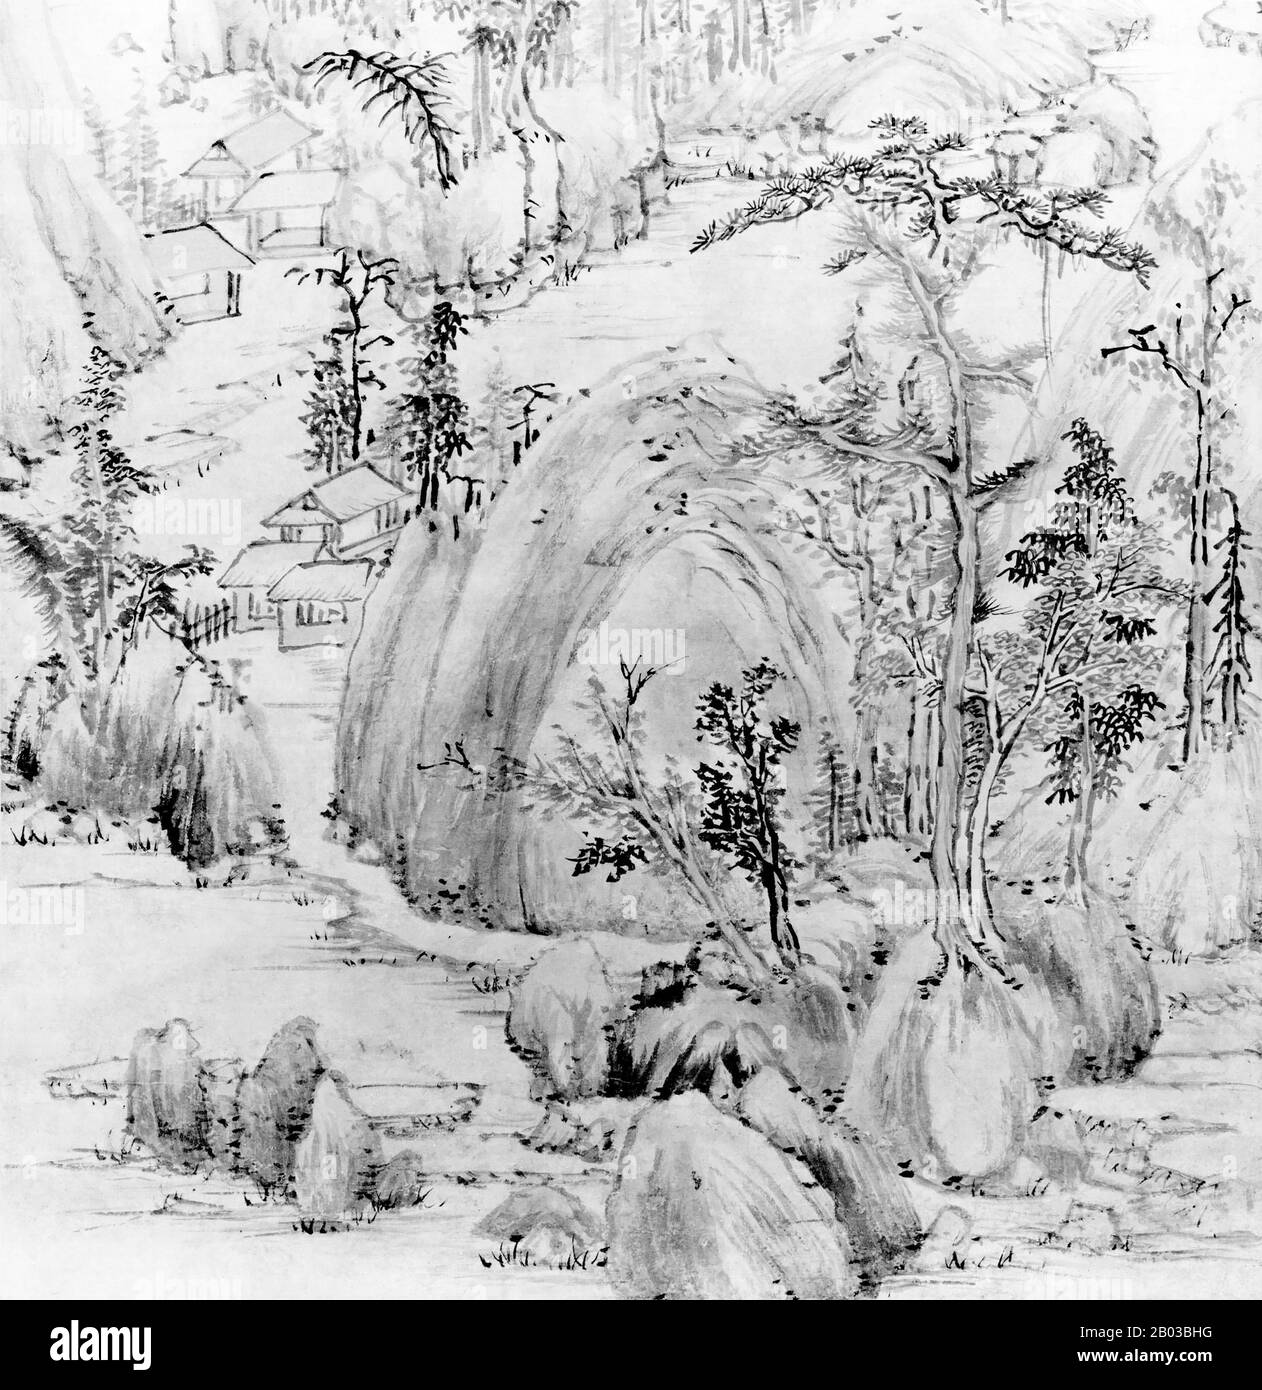 Chine: 'Paysage dans le style de Huang Gongwang'. Détail de la peinture de la toile suspendue par Mo Shilong (1537-1587), 1581. Mo Shilong (1537-1587) était un artiste chinois vivant pendant la période de la dynastie Ming. Mo Shilong était habile dans la calligraphie et la peinture, bien que sa carrière ait été réduite par sa mort précoce. Banque D'Images